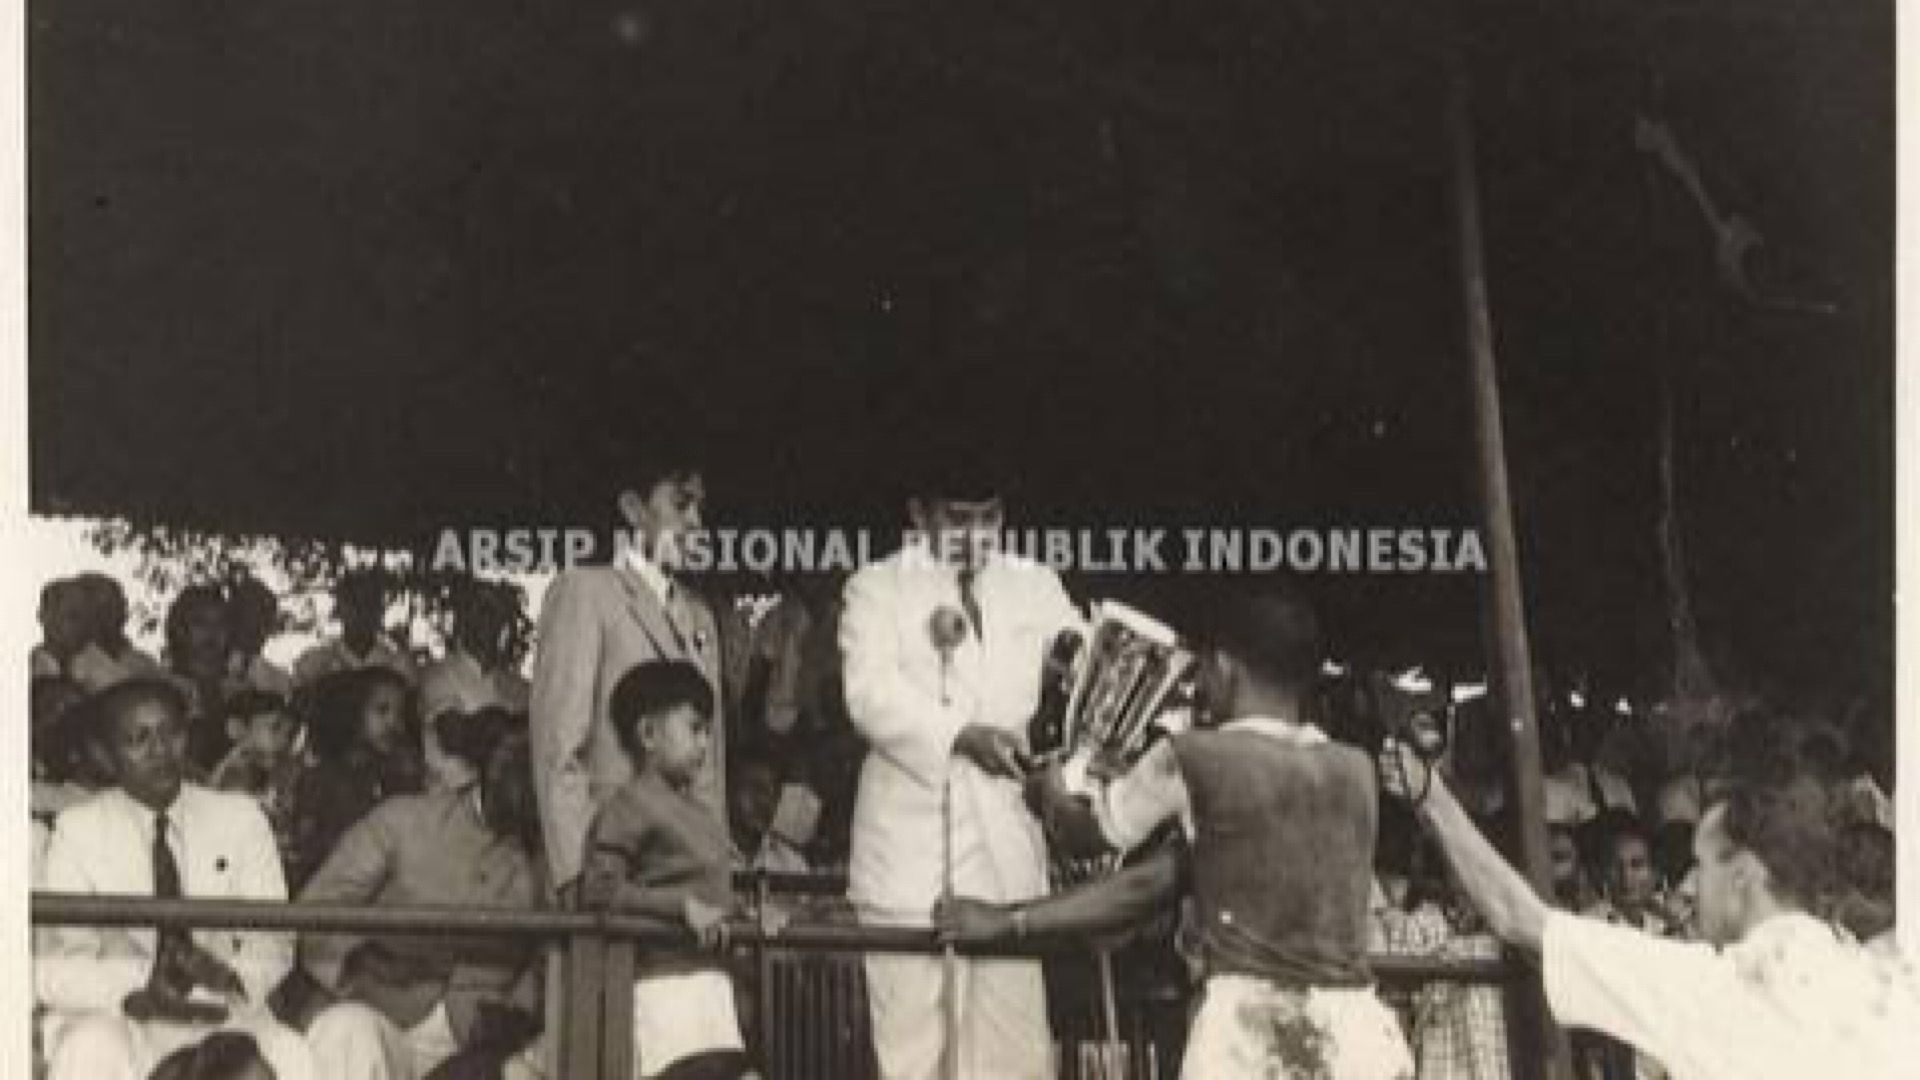 Presiden Soekarno memberikan piala kepada seorang pemain yang menjuarai pertandingan sepak bola di Lapangan Bataviase Voetbal Club (BVC).